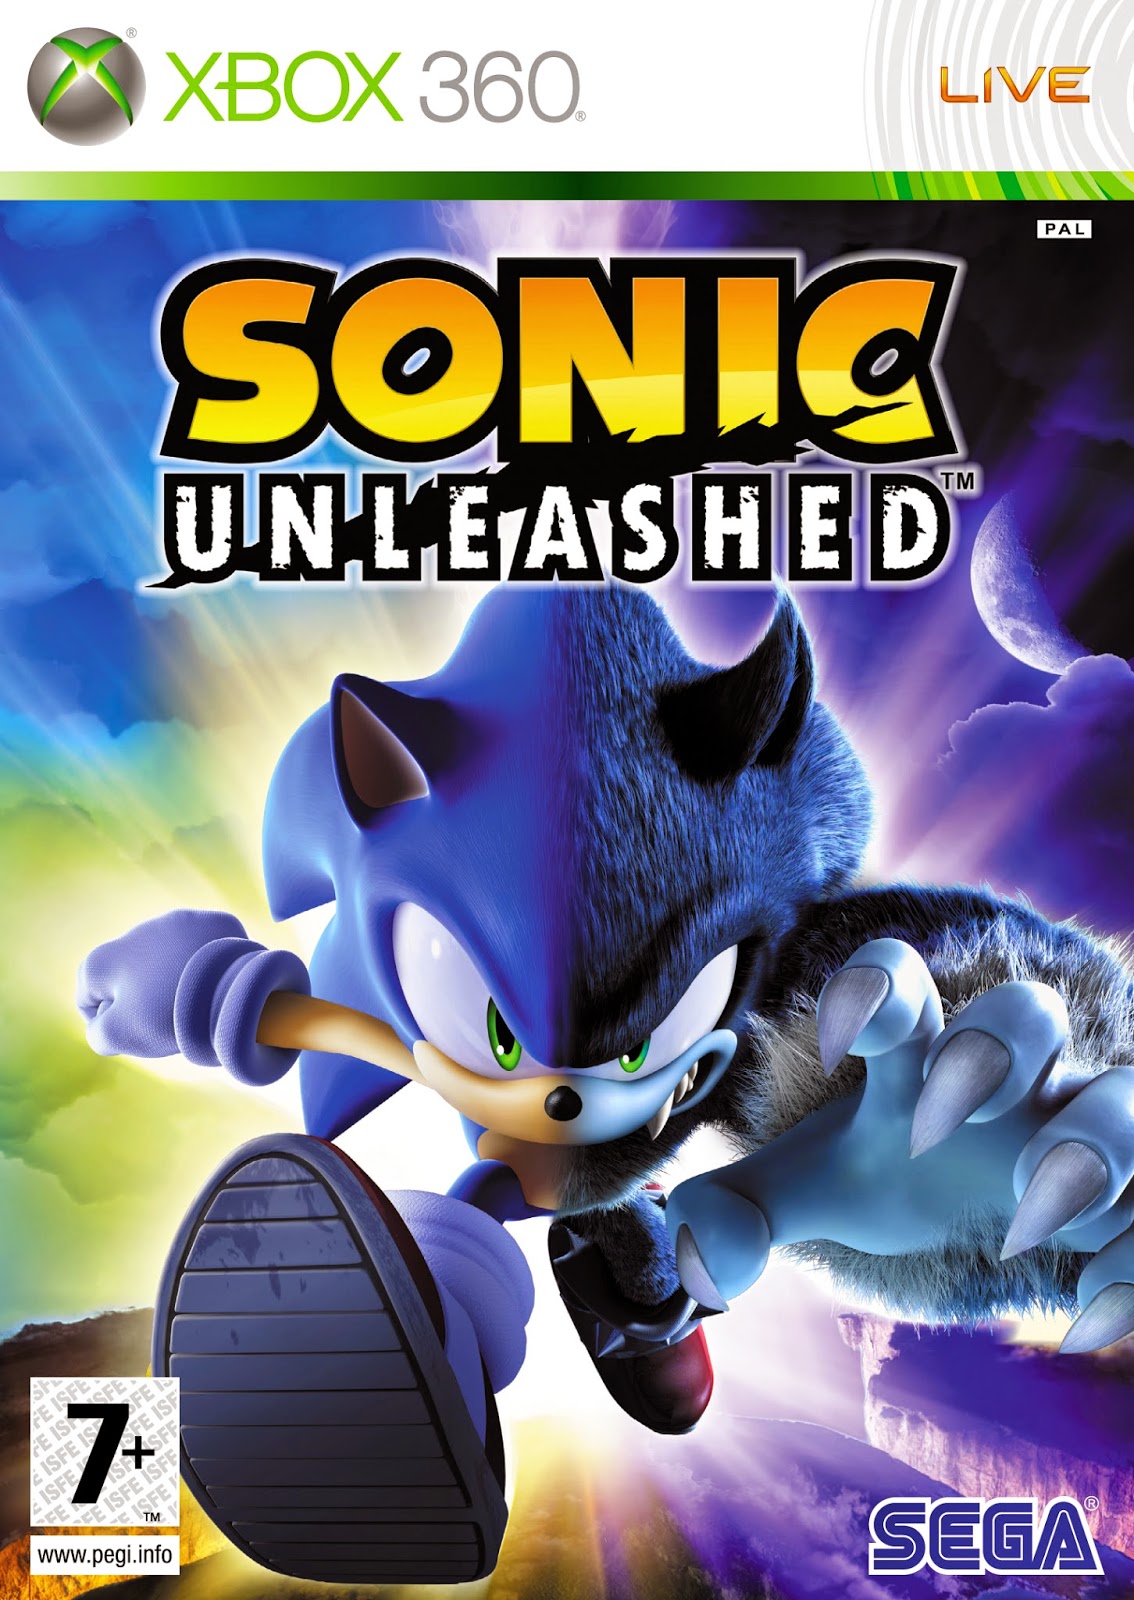 Assista ao novo e melhorado trailer de Sonic: O Filme